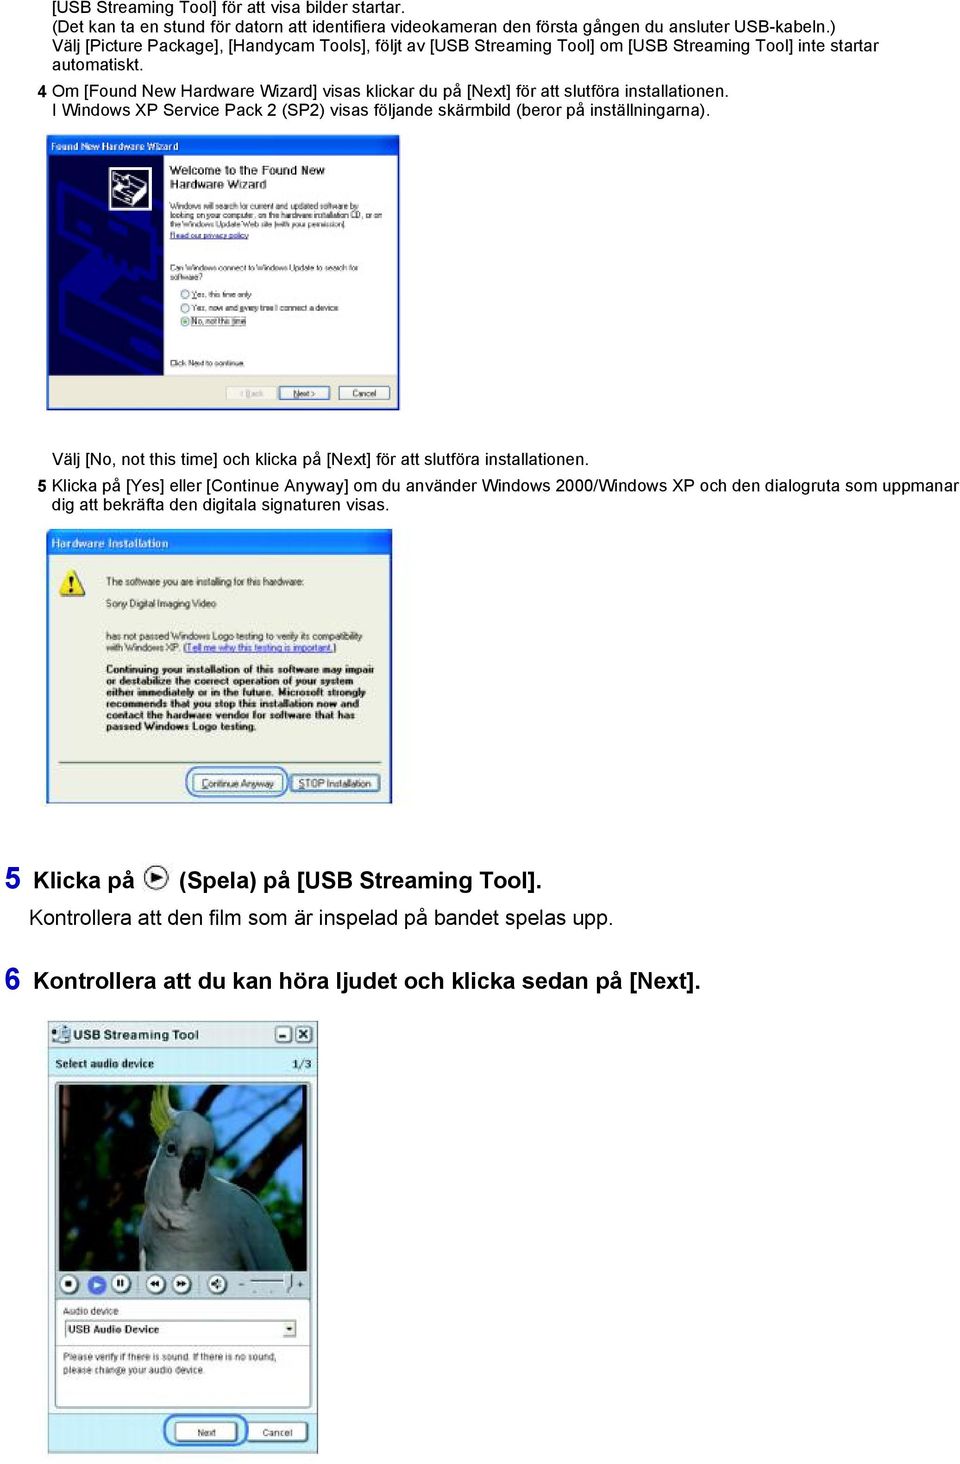 4 Om [Found New Hardware Wizard] visas klickar du på [Next] för att slutföra installationen. I Windows XP Service Pack 2 (SP2) visas följande skärmbild (beror på inställningarna).